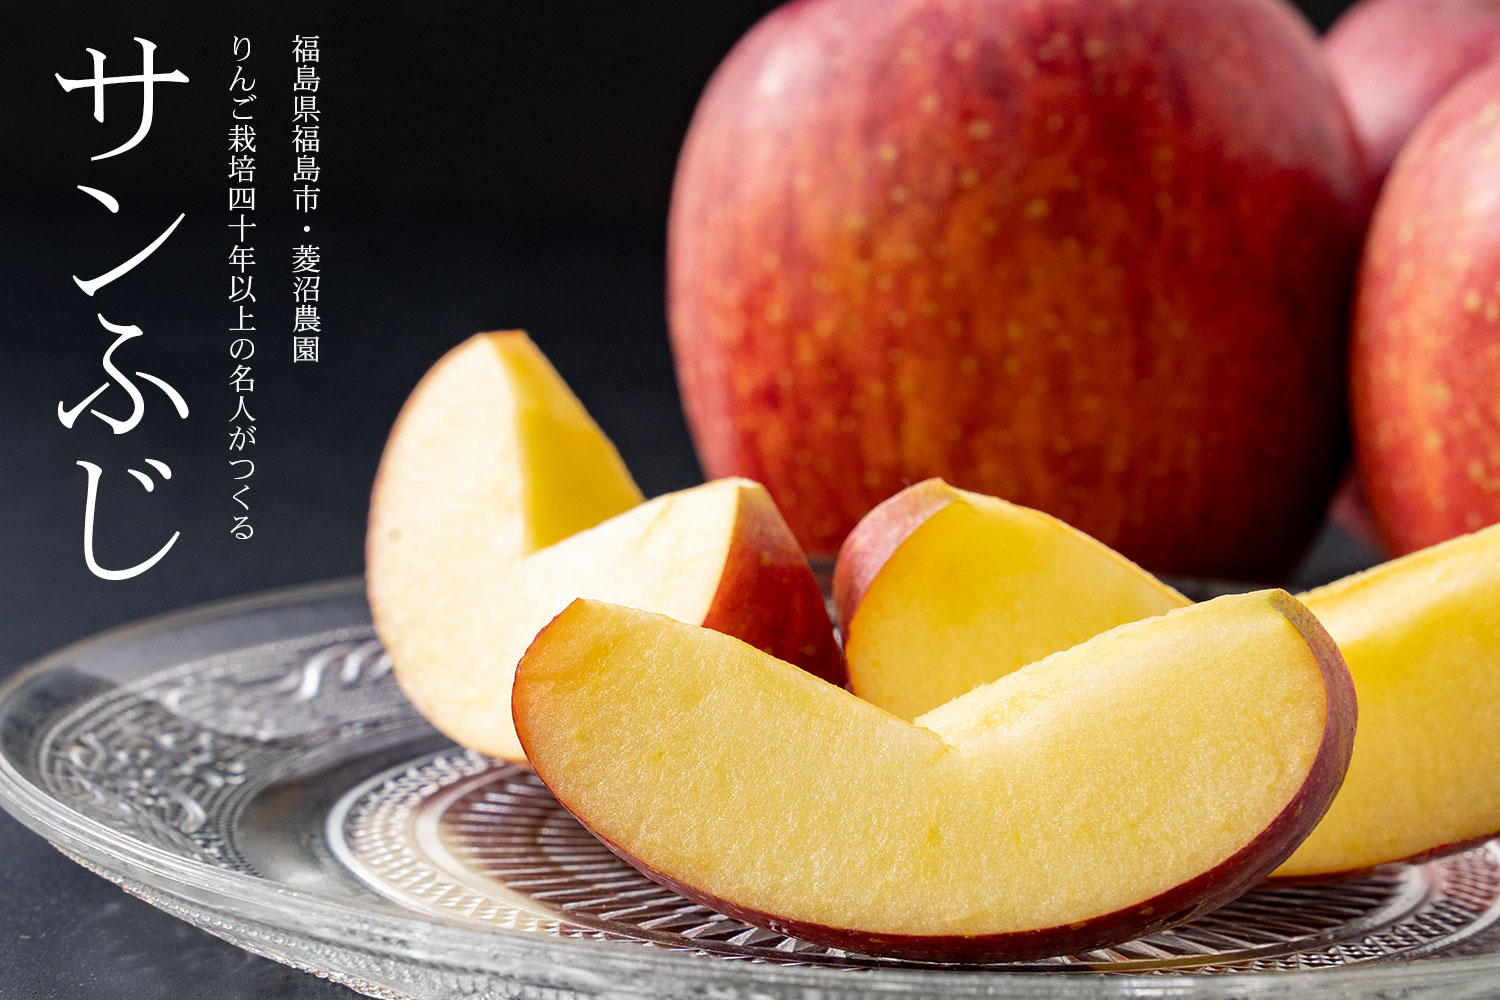 福島県福島市・菱沼農園 りんご栽培40年以上の名人がつくる「サンふじ」